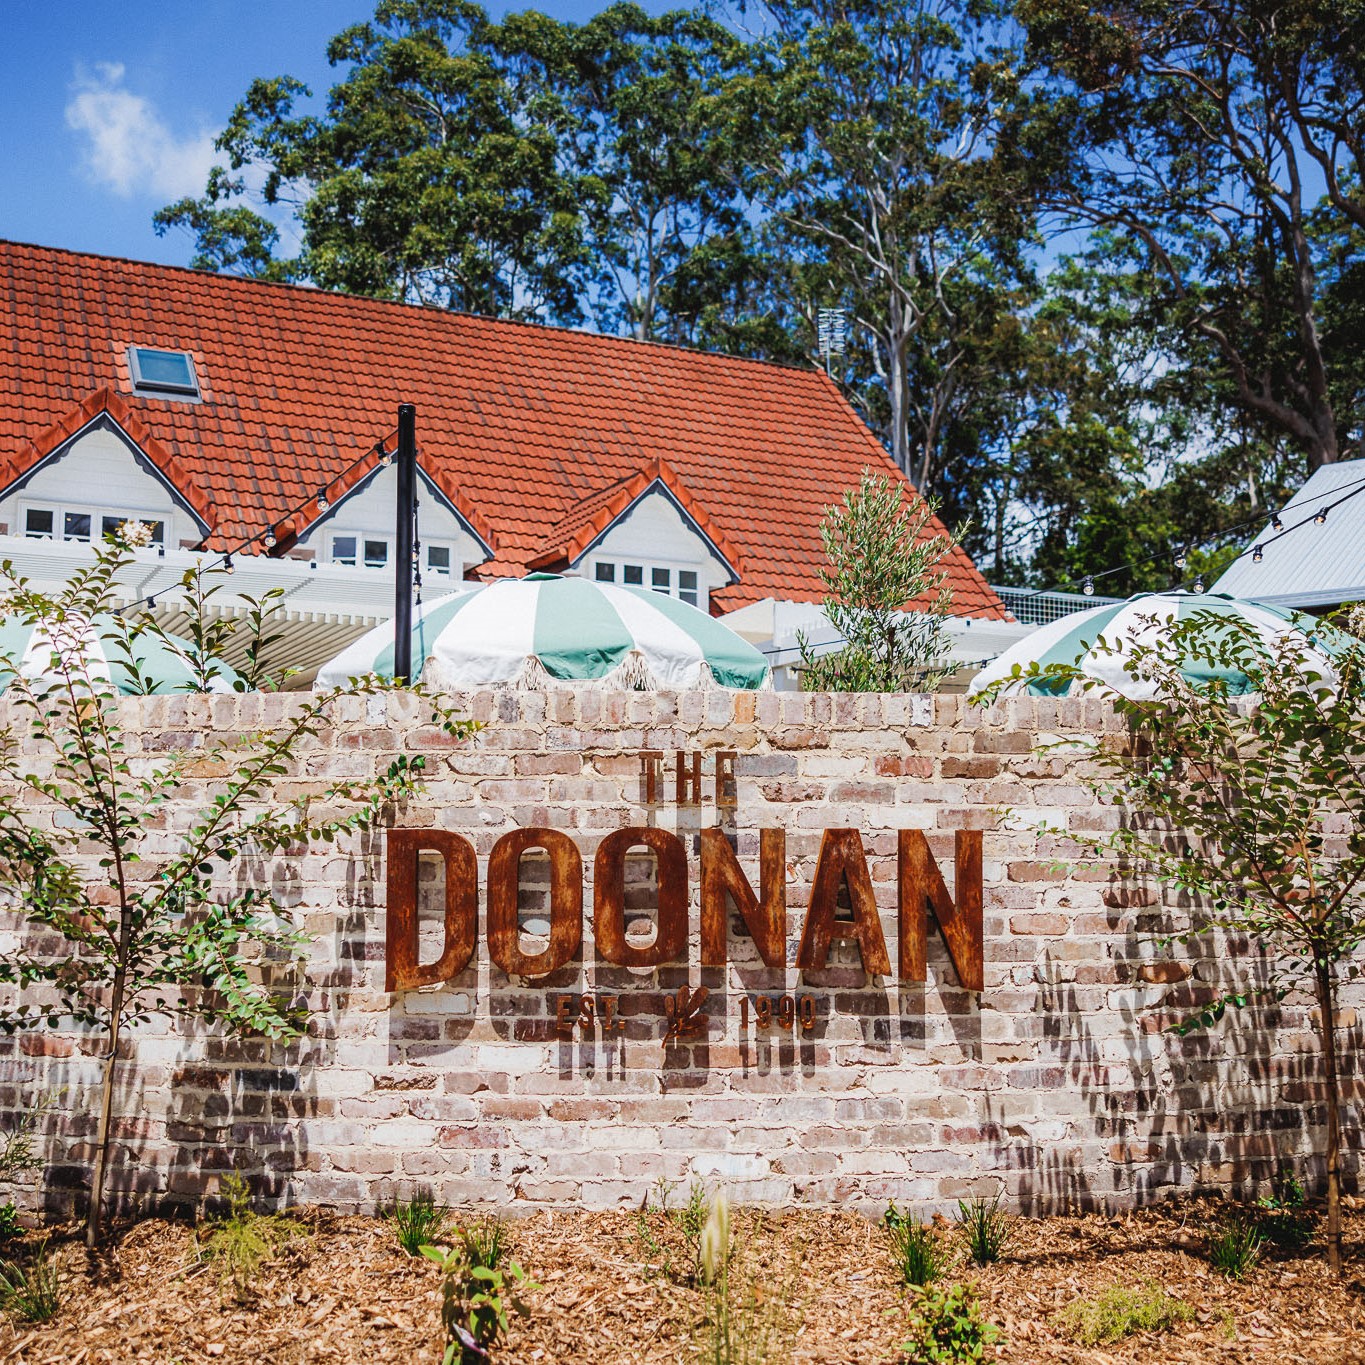 The Doonan